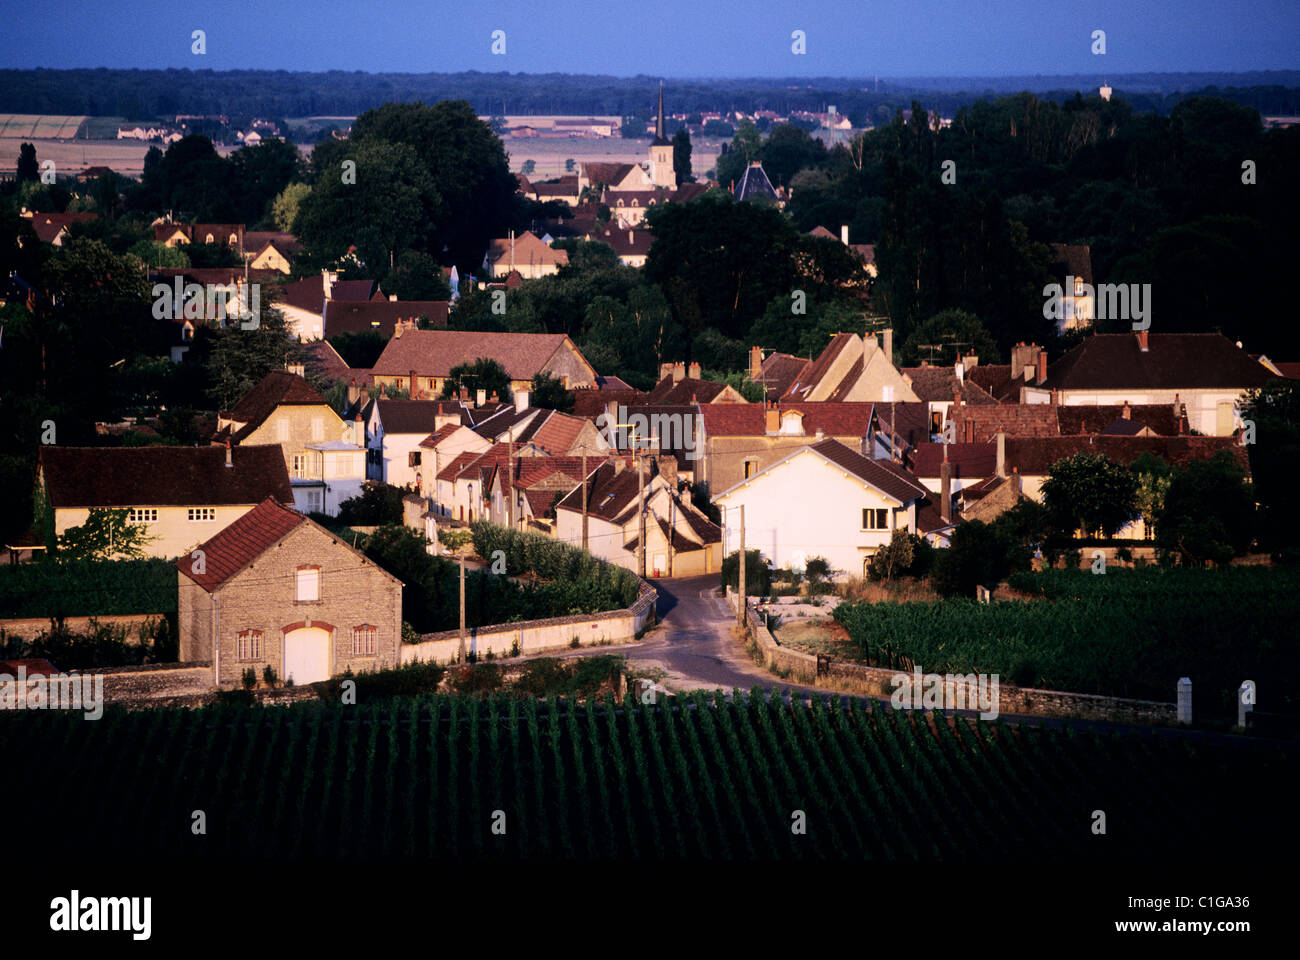 France, Cote d'Or, Cote de Nuits appelation, Clos Vougeot village Stock Photo